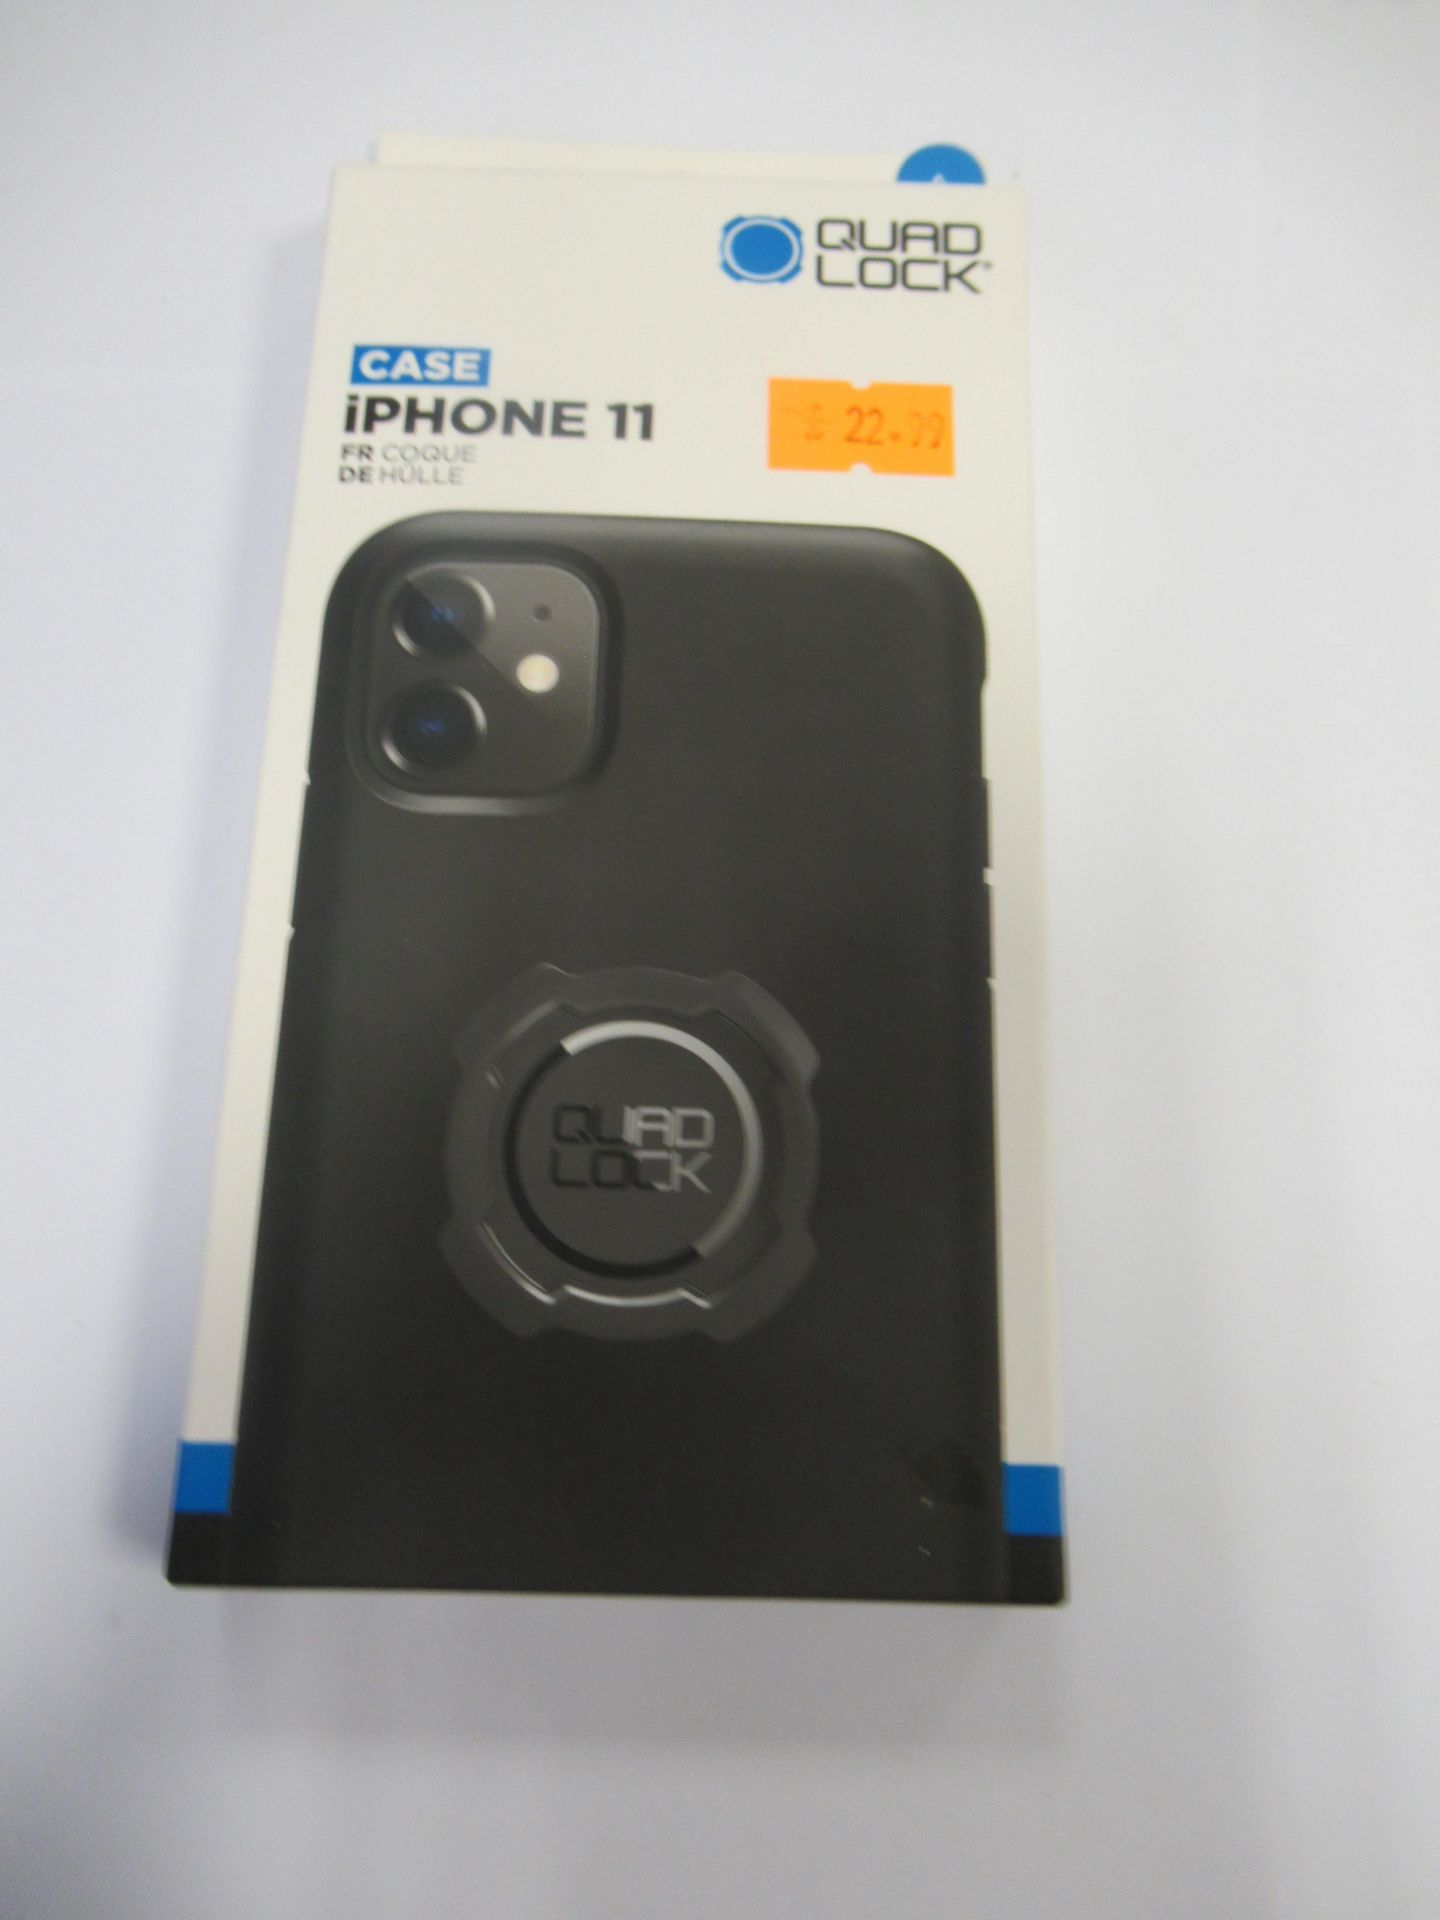 Quad Lock Black Phone Cases - Image 18 of 23